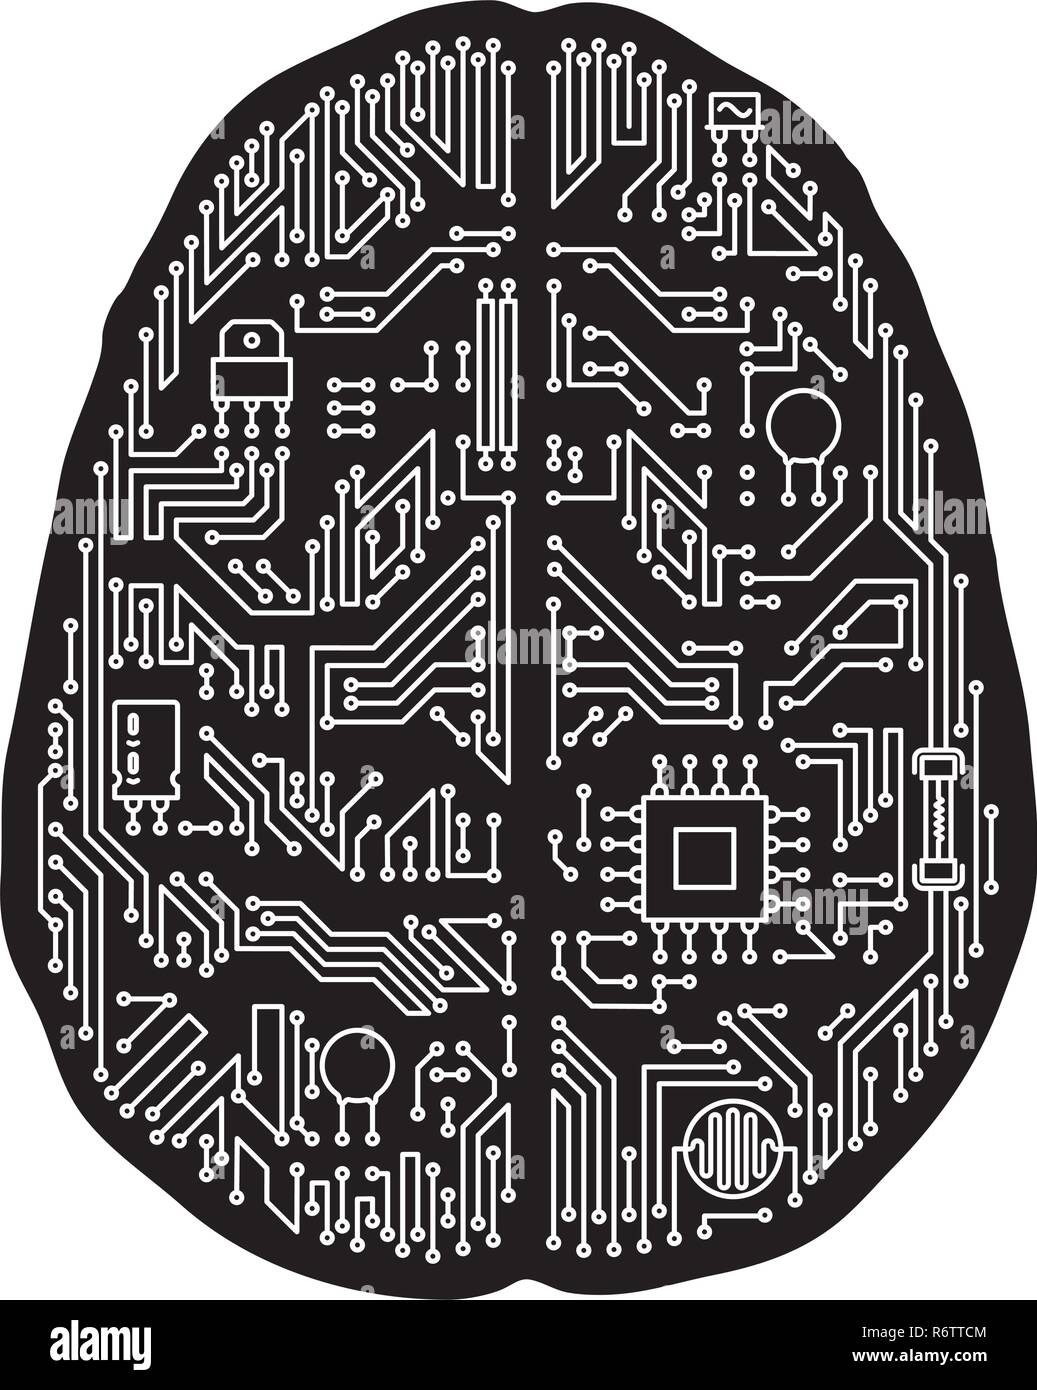 Scheda madre di cervello umano isolato a forma di illustrazione vettoriale. In bianco e nero di intelligenza artificiale e il concetto di tecnologia. Illustrazione Vettoriale